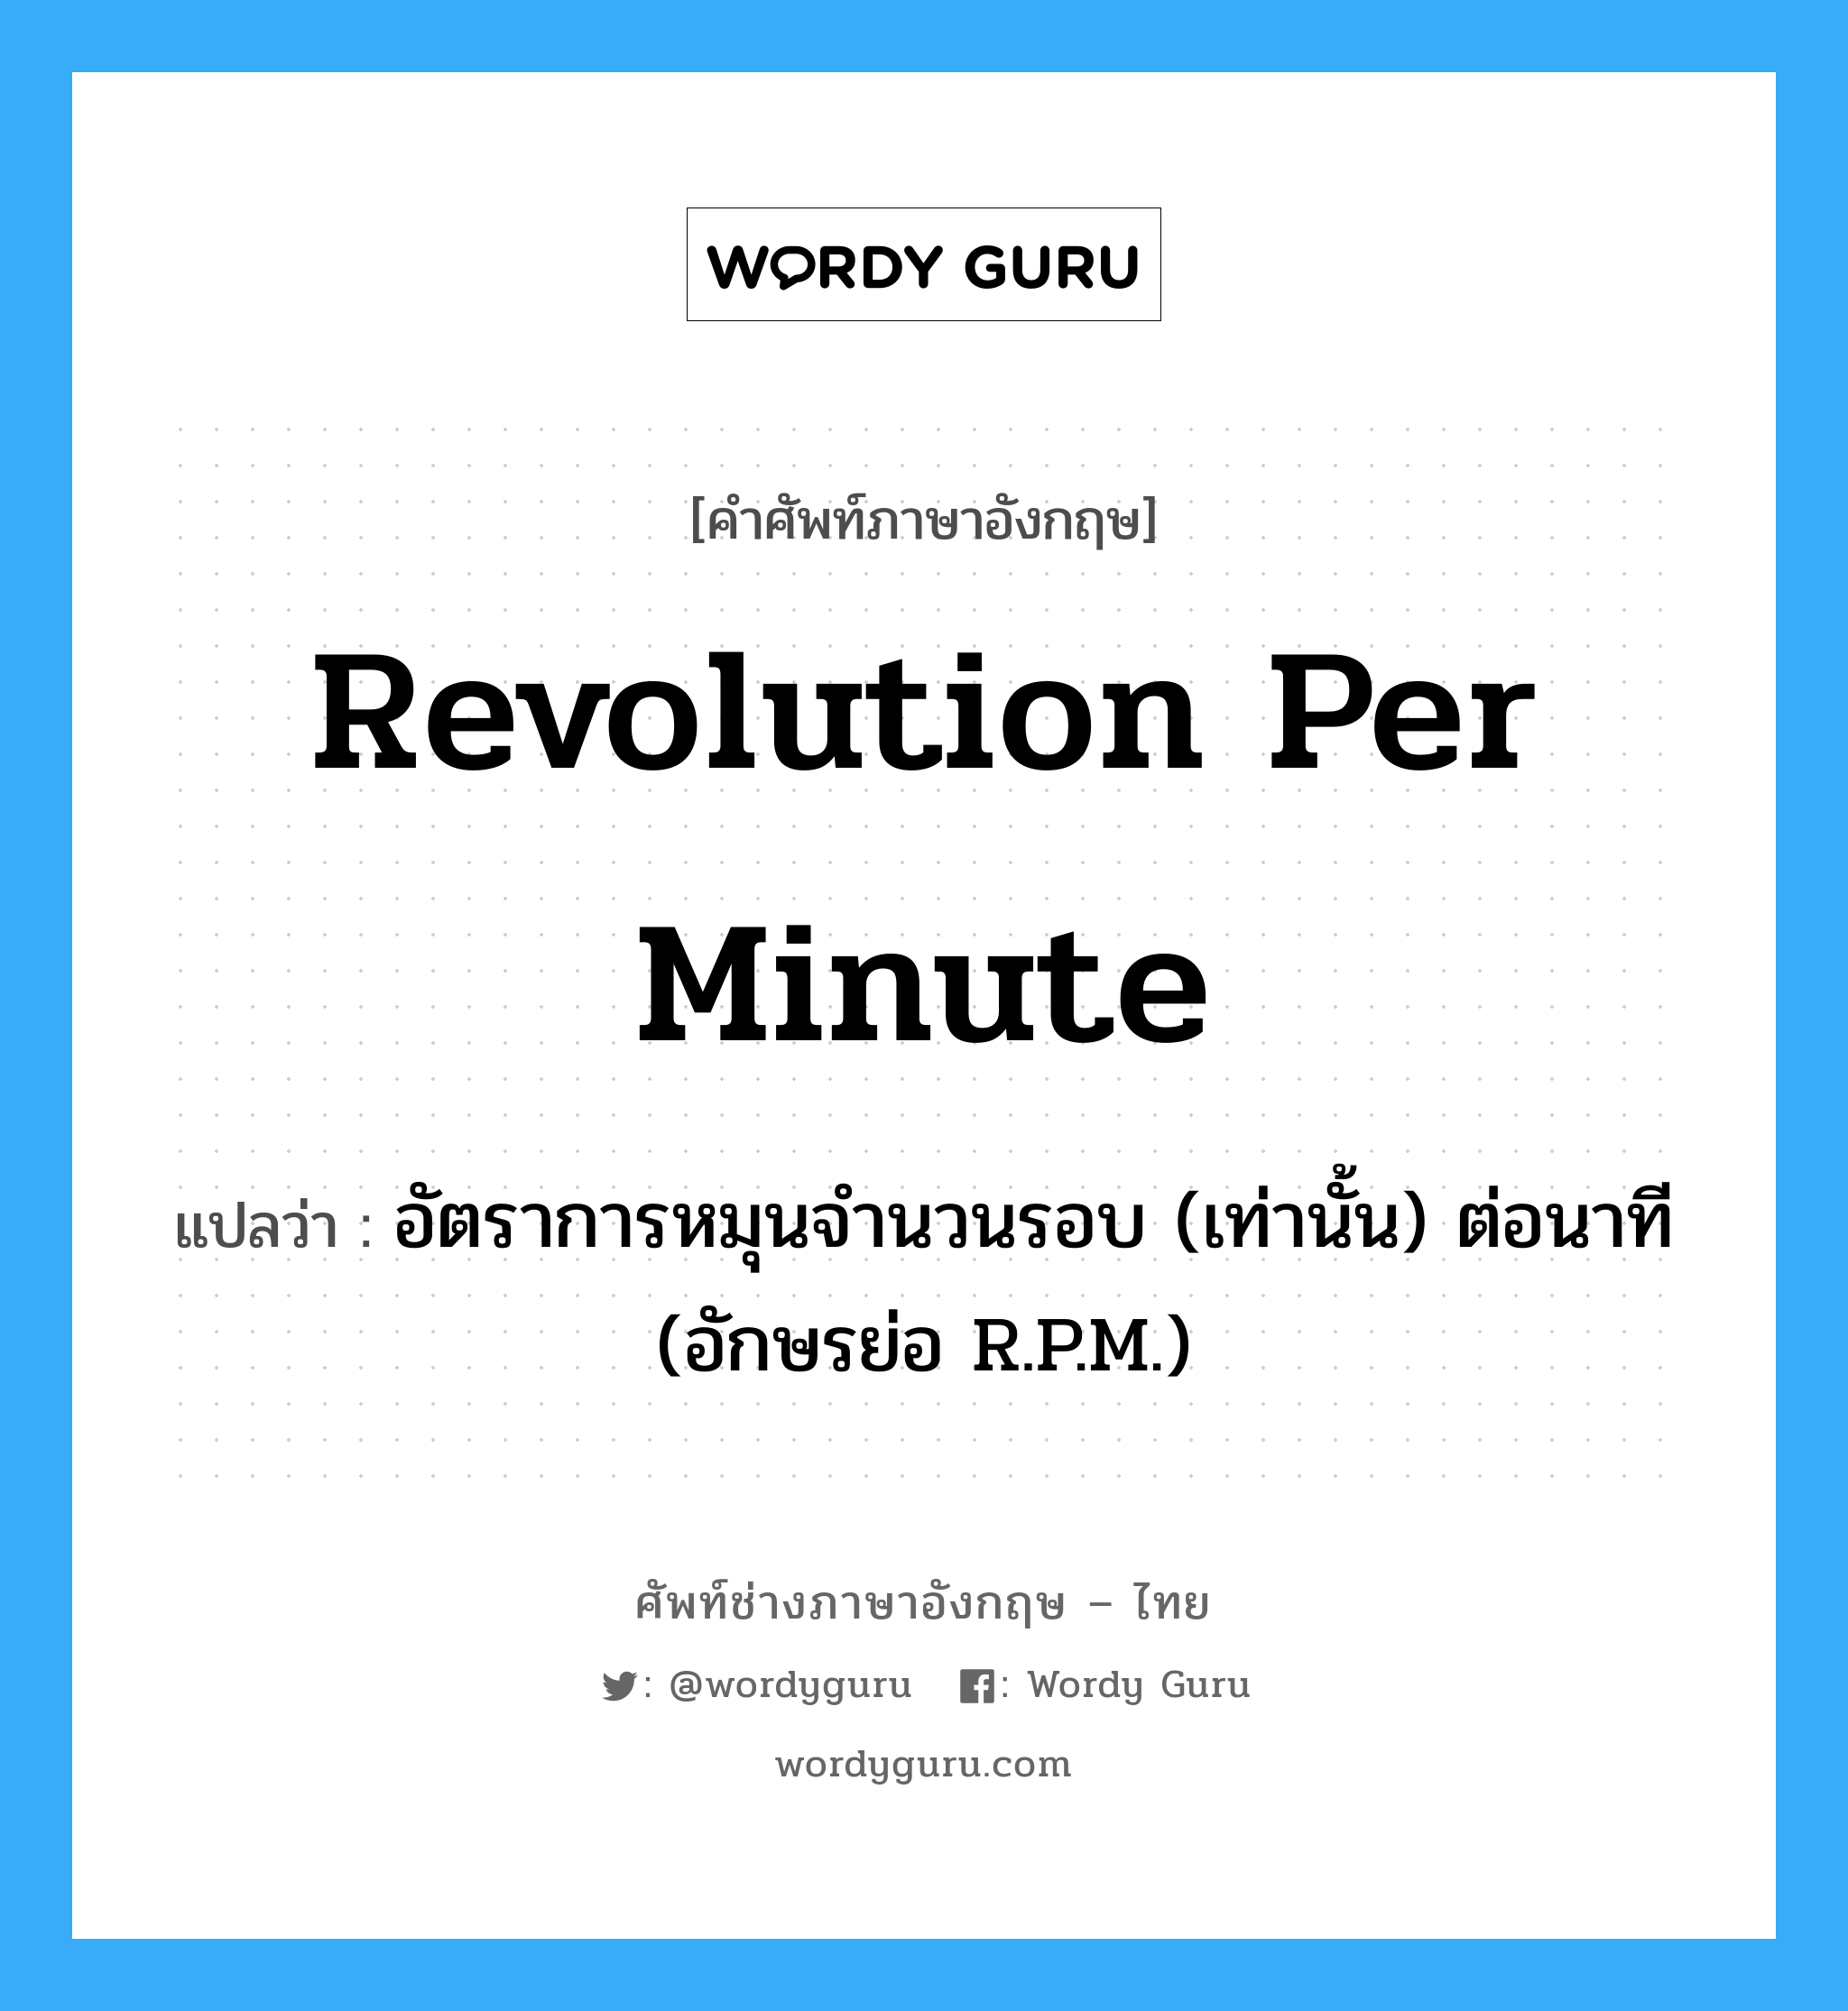 revolution per minute แปลว่า?, คำศัพท์ช่างภาษาอังกฤษ - ไทย revolution per minute คำศัพท์ภาษาอังกฤษ revolution per minute แปลว่า อัตราการหมุนจำนวนรอบ (เท่านั้น) ต่อนาที (อักษรย่อ R.P.M.)